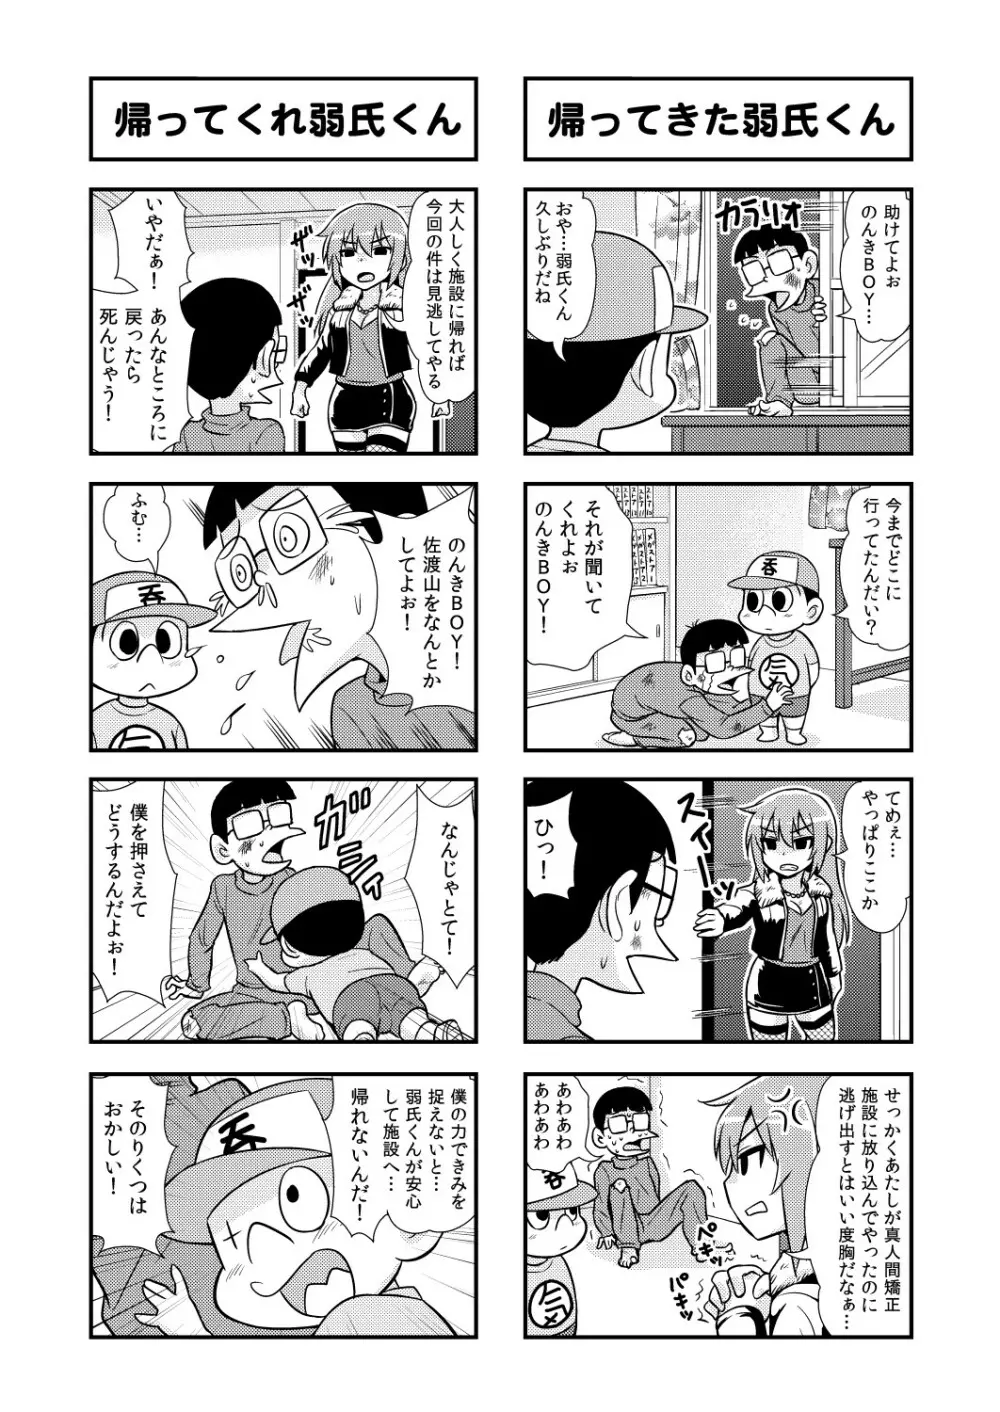 のんきBOY 1-39 49ページ